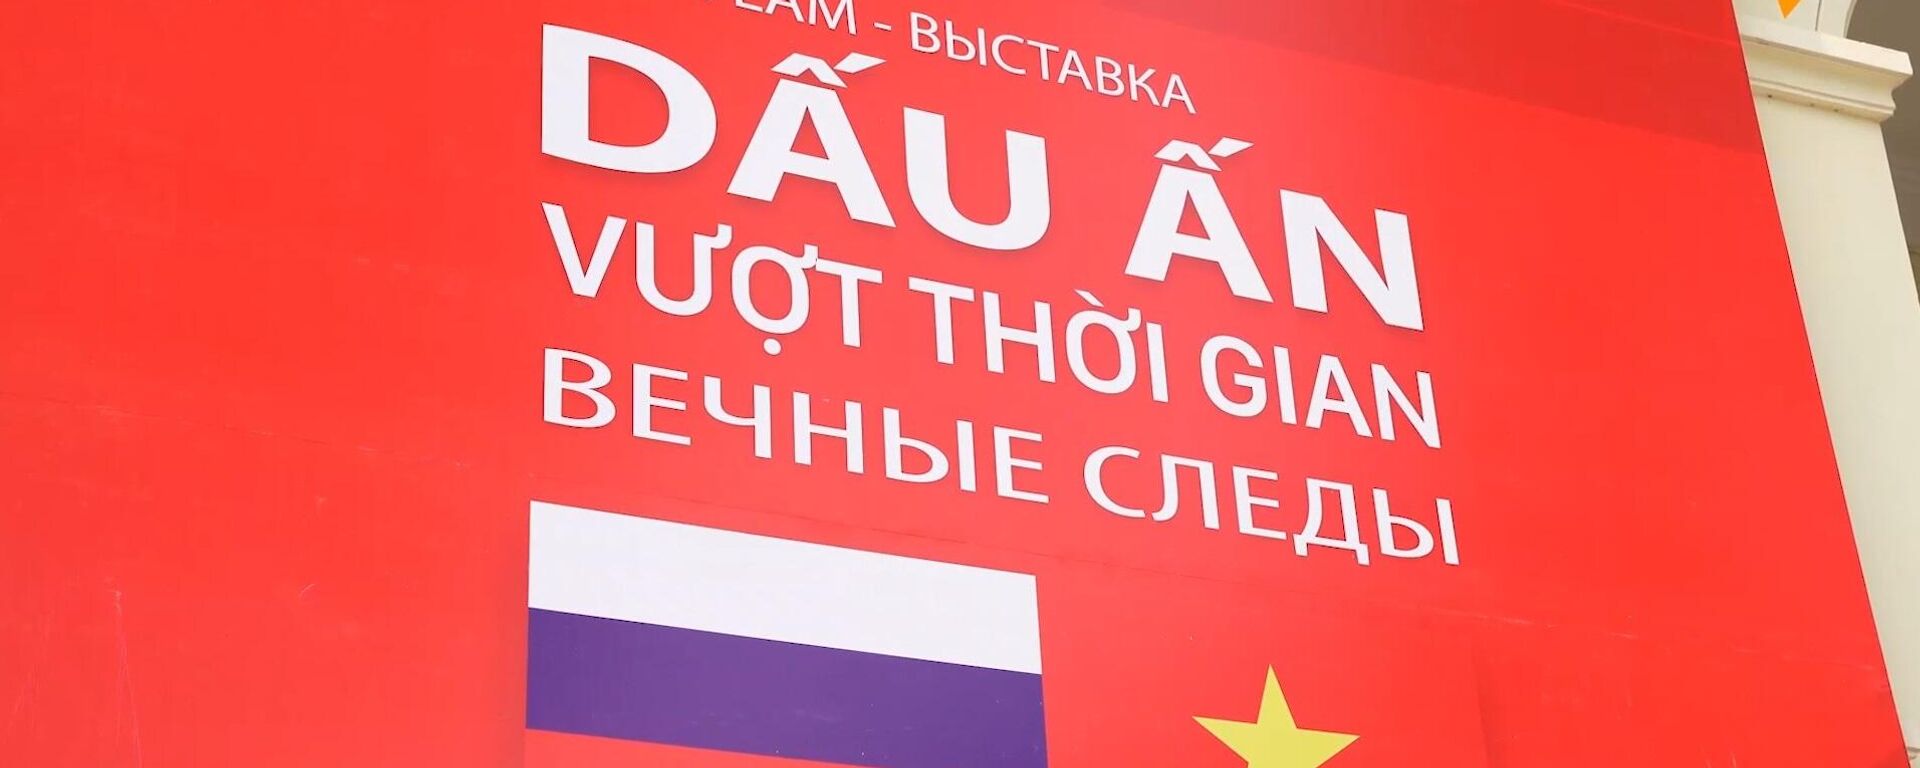 Khai mạc triển lãm ảnh “Dấu ấn vượt thời gian” - Sputnik Việt Nam, 1920, 29.04.2022